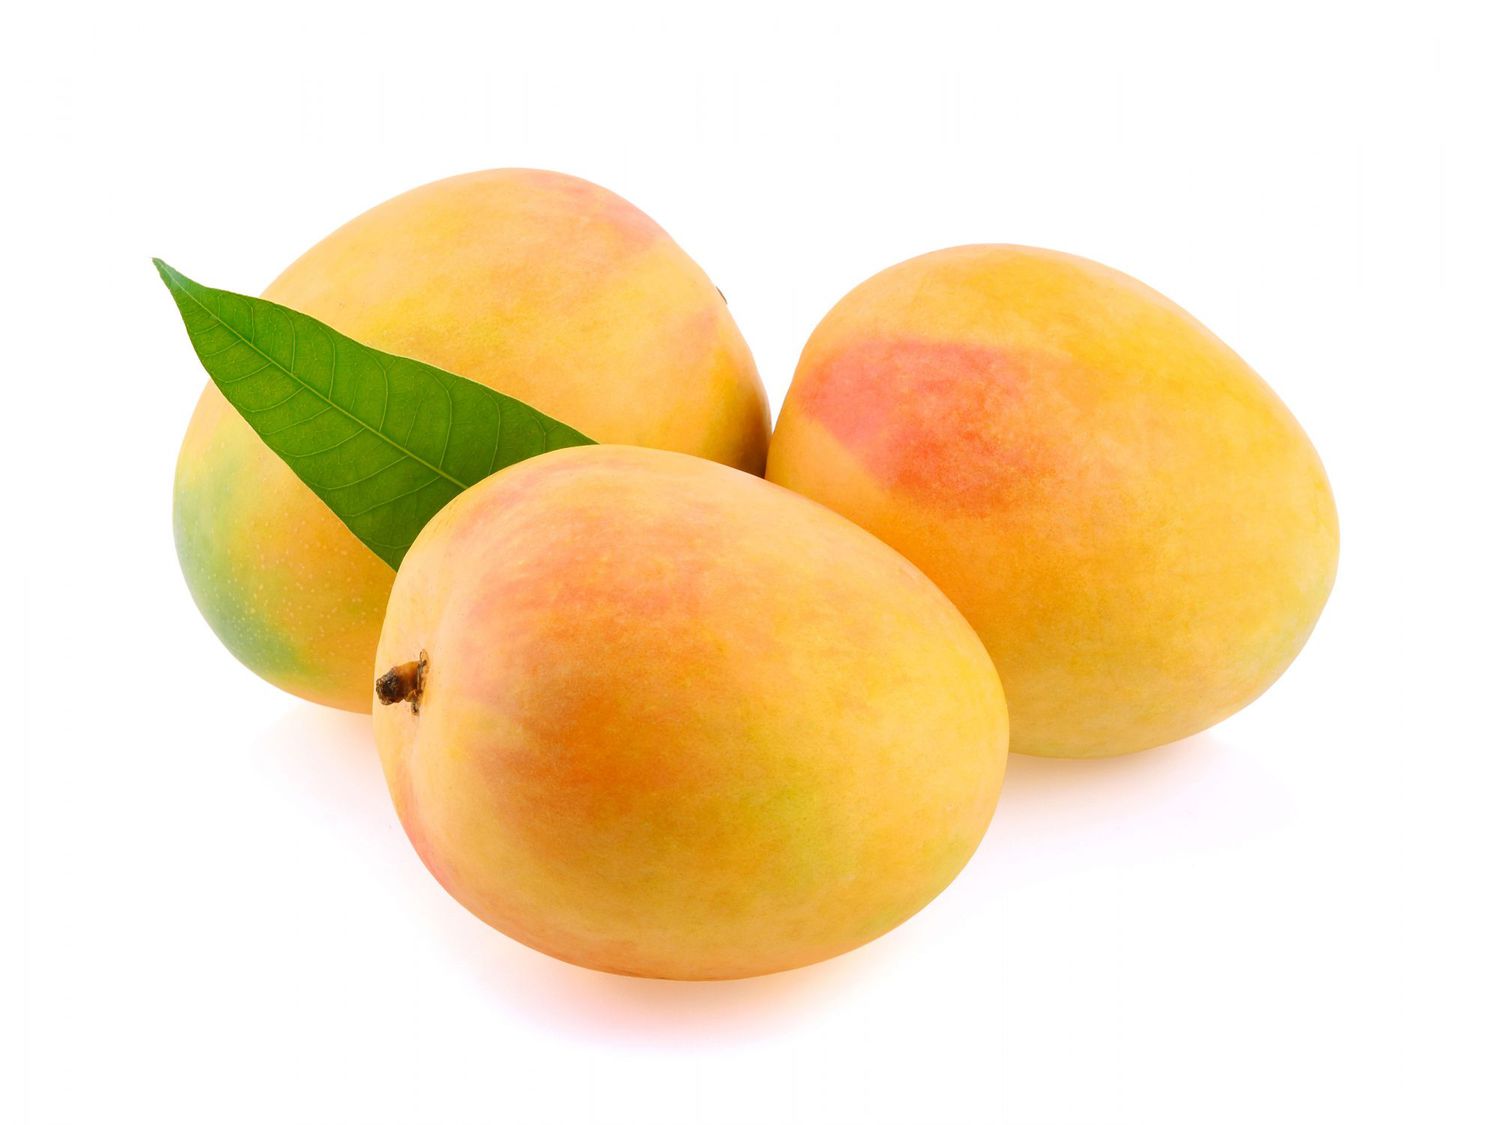 mangoes on white background